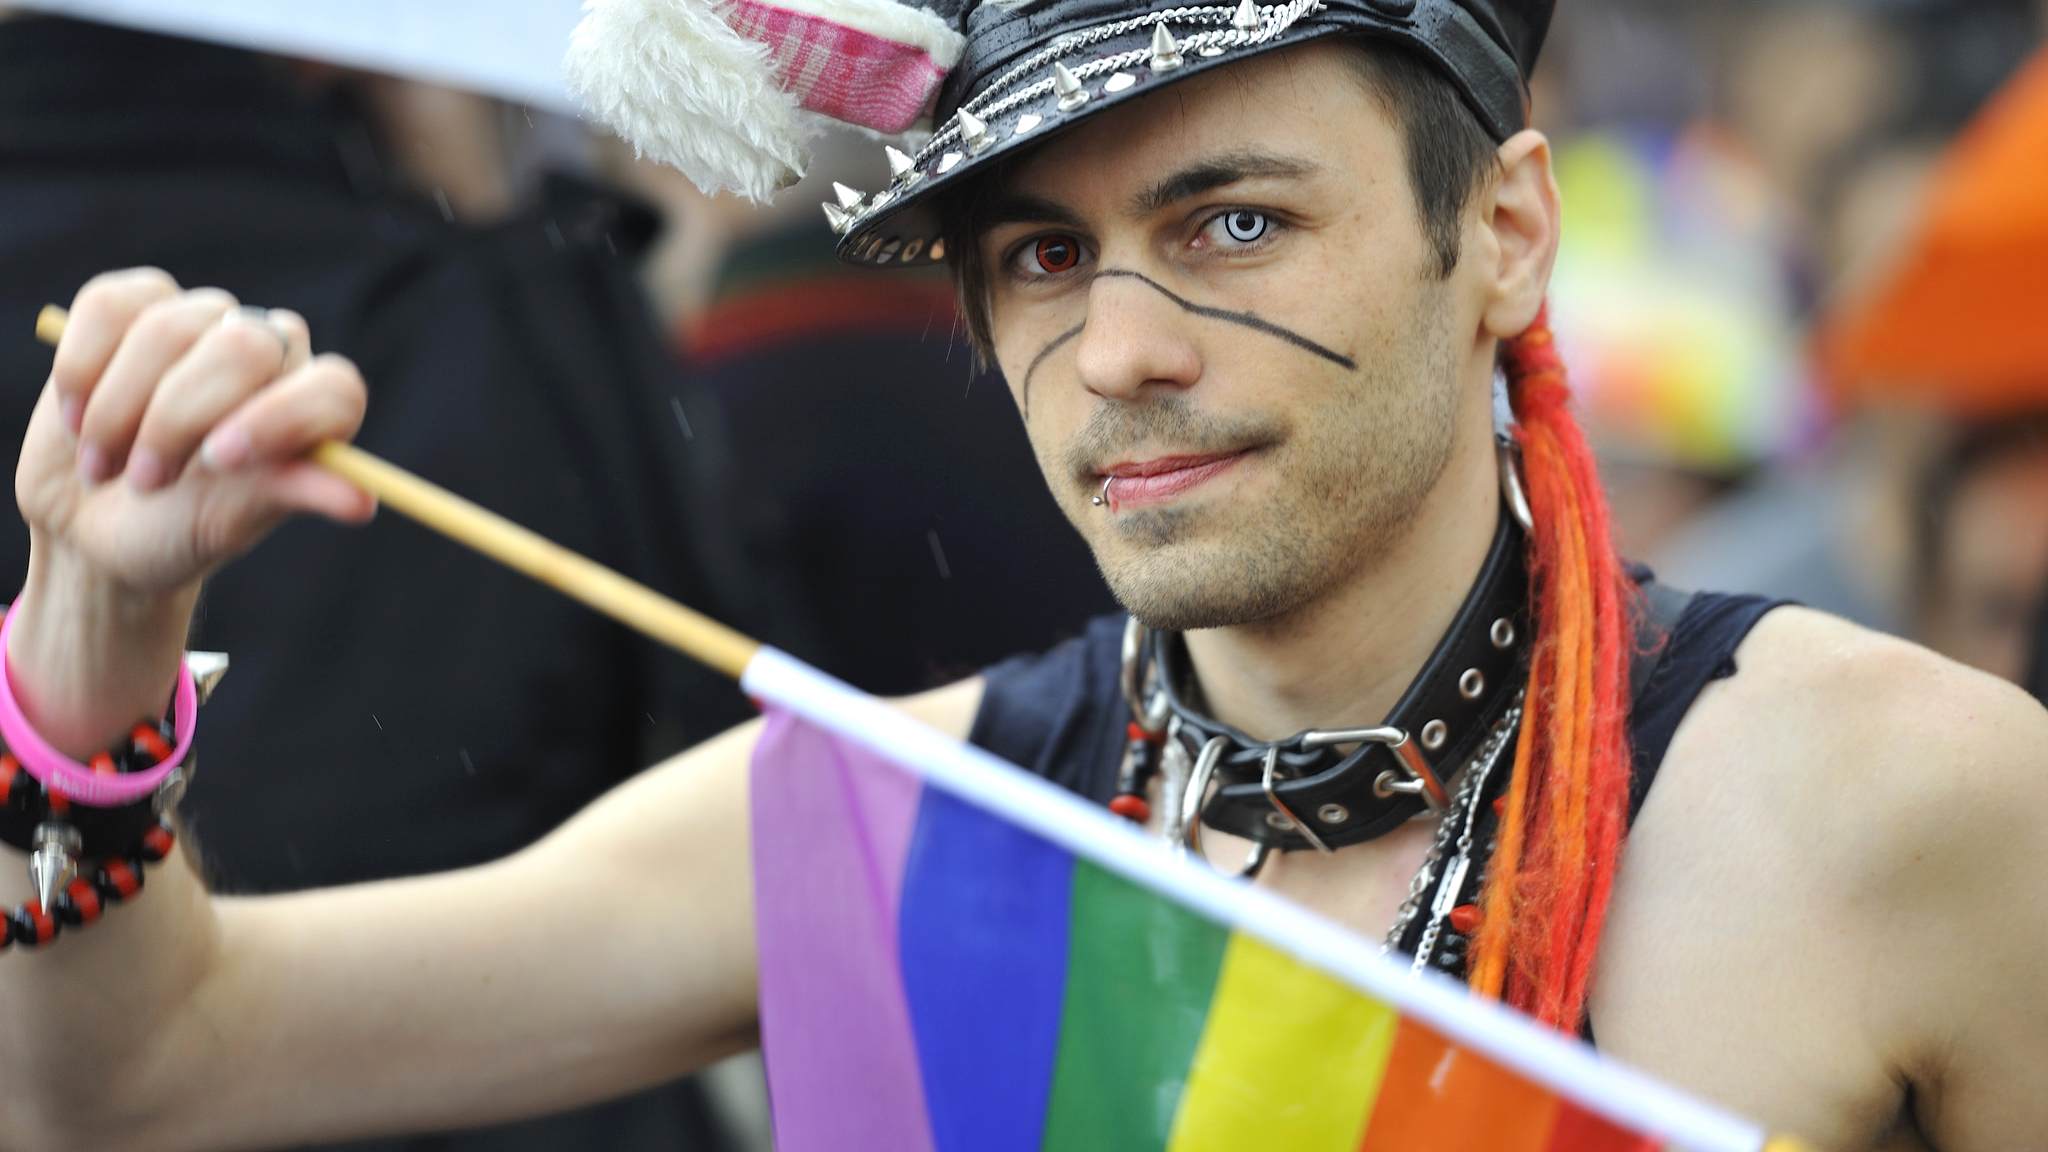 nejlepší gay seznamka 2014vtipné seznamky profilů nabídek